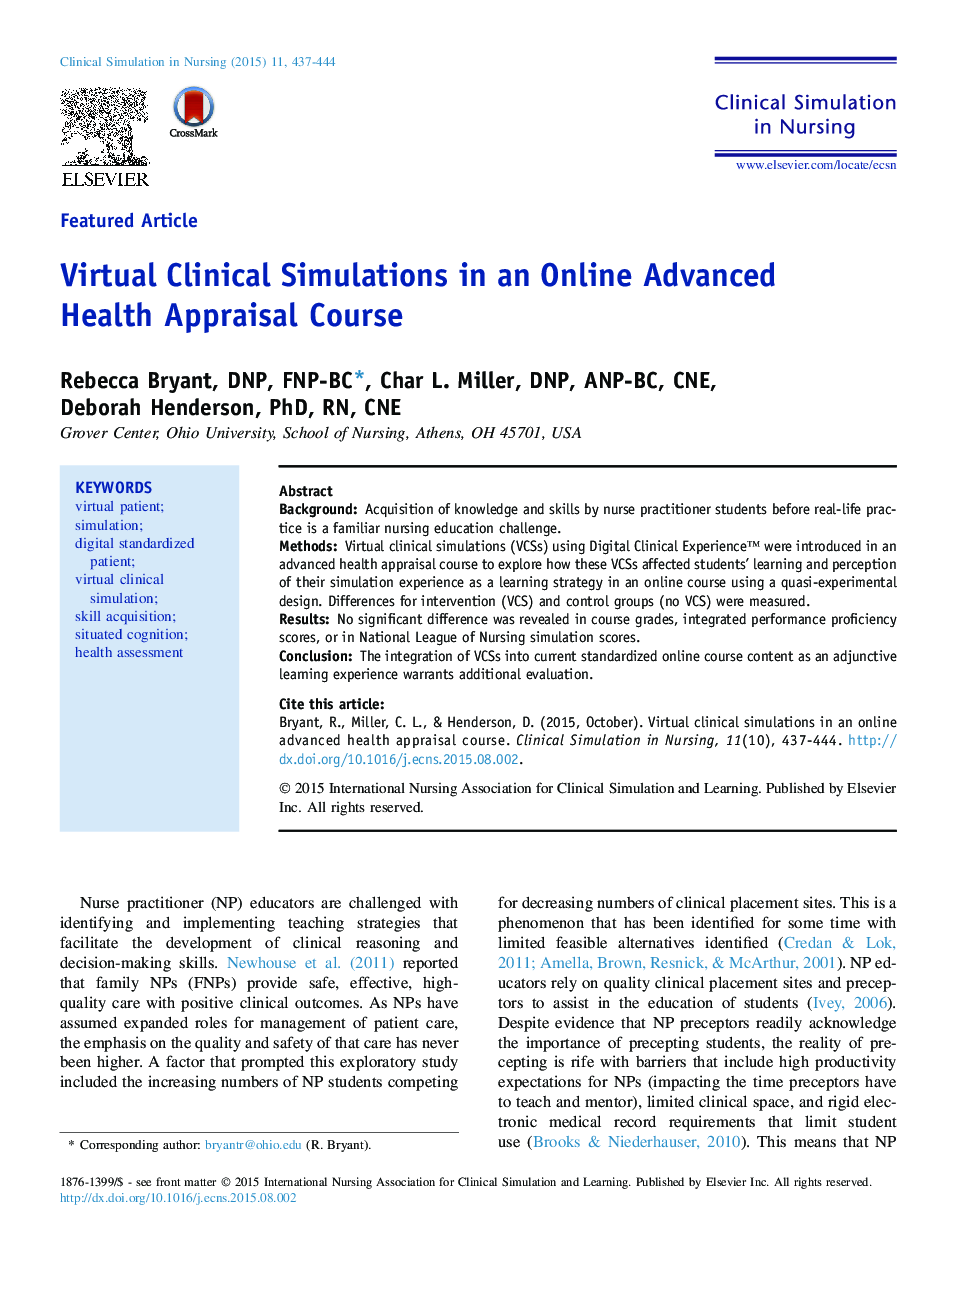 شبیه سازی های بالینی مجازی در دوره پیشرفته ارزیابی سلامت آنلاین 